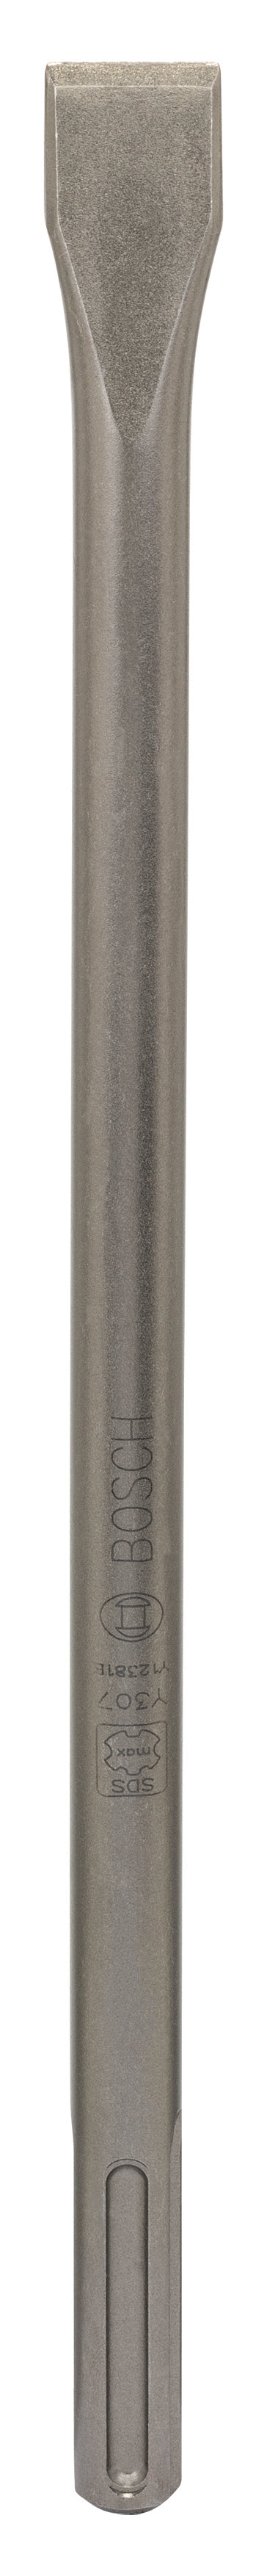 Bosch Professional SDS-Max Hammer Drill Bit Flat Chisel 280x25mm (10 Pack)